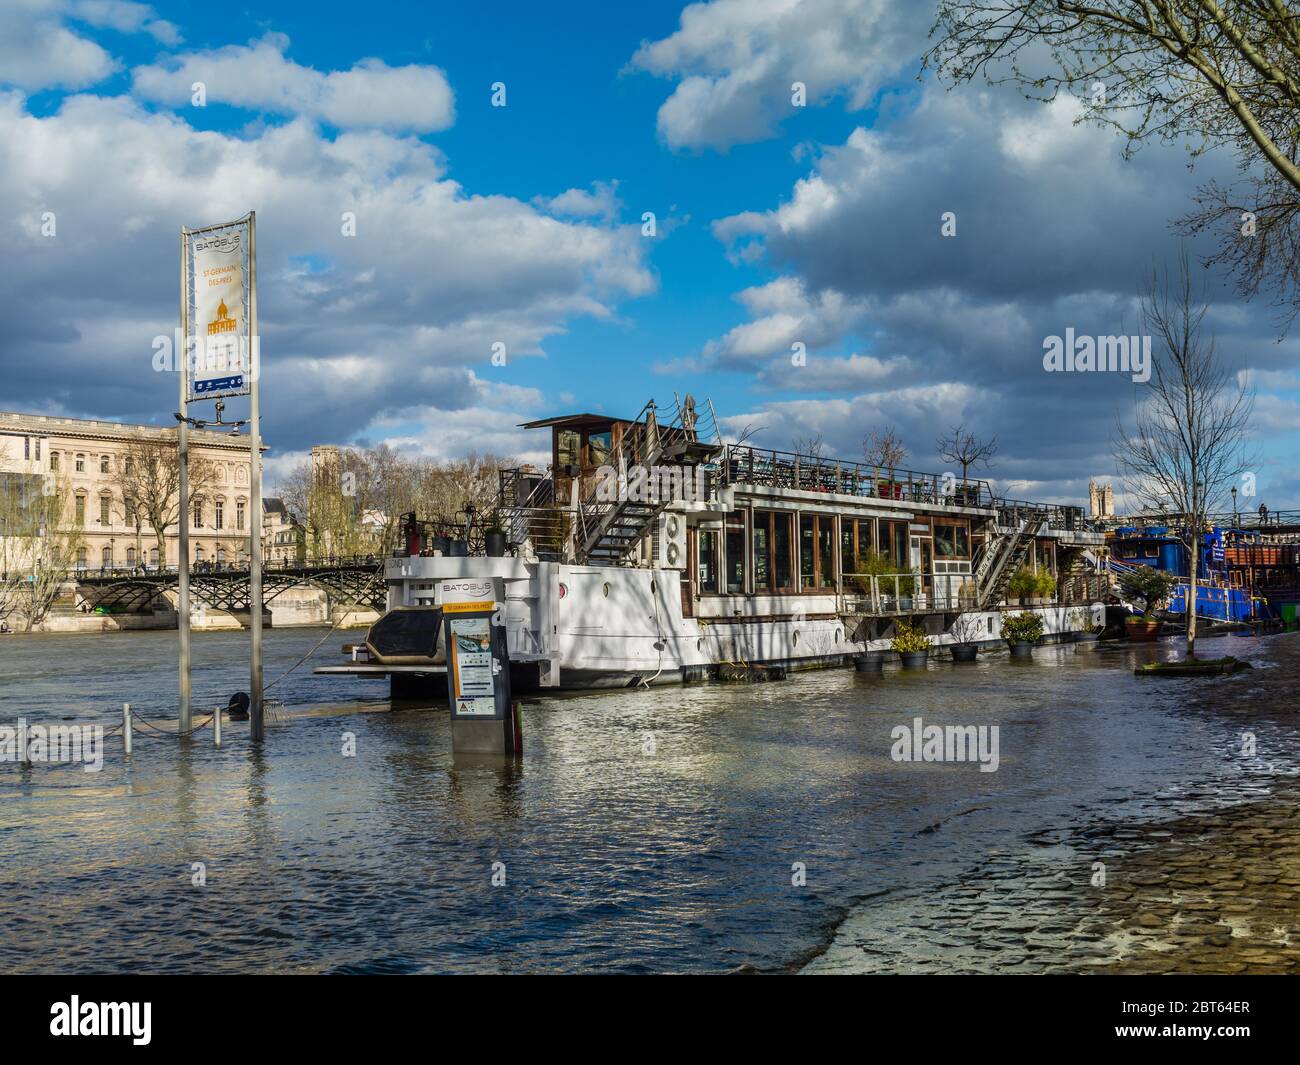 'Batobus' tourist river transport moored on the river Seine at Saint Germain des Prés, Paris 6, France. Stock Photo